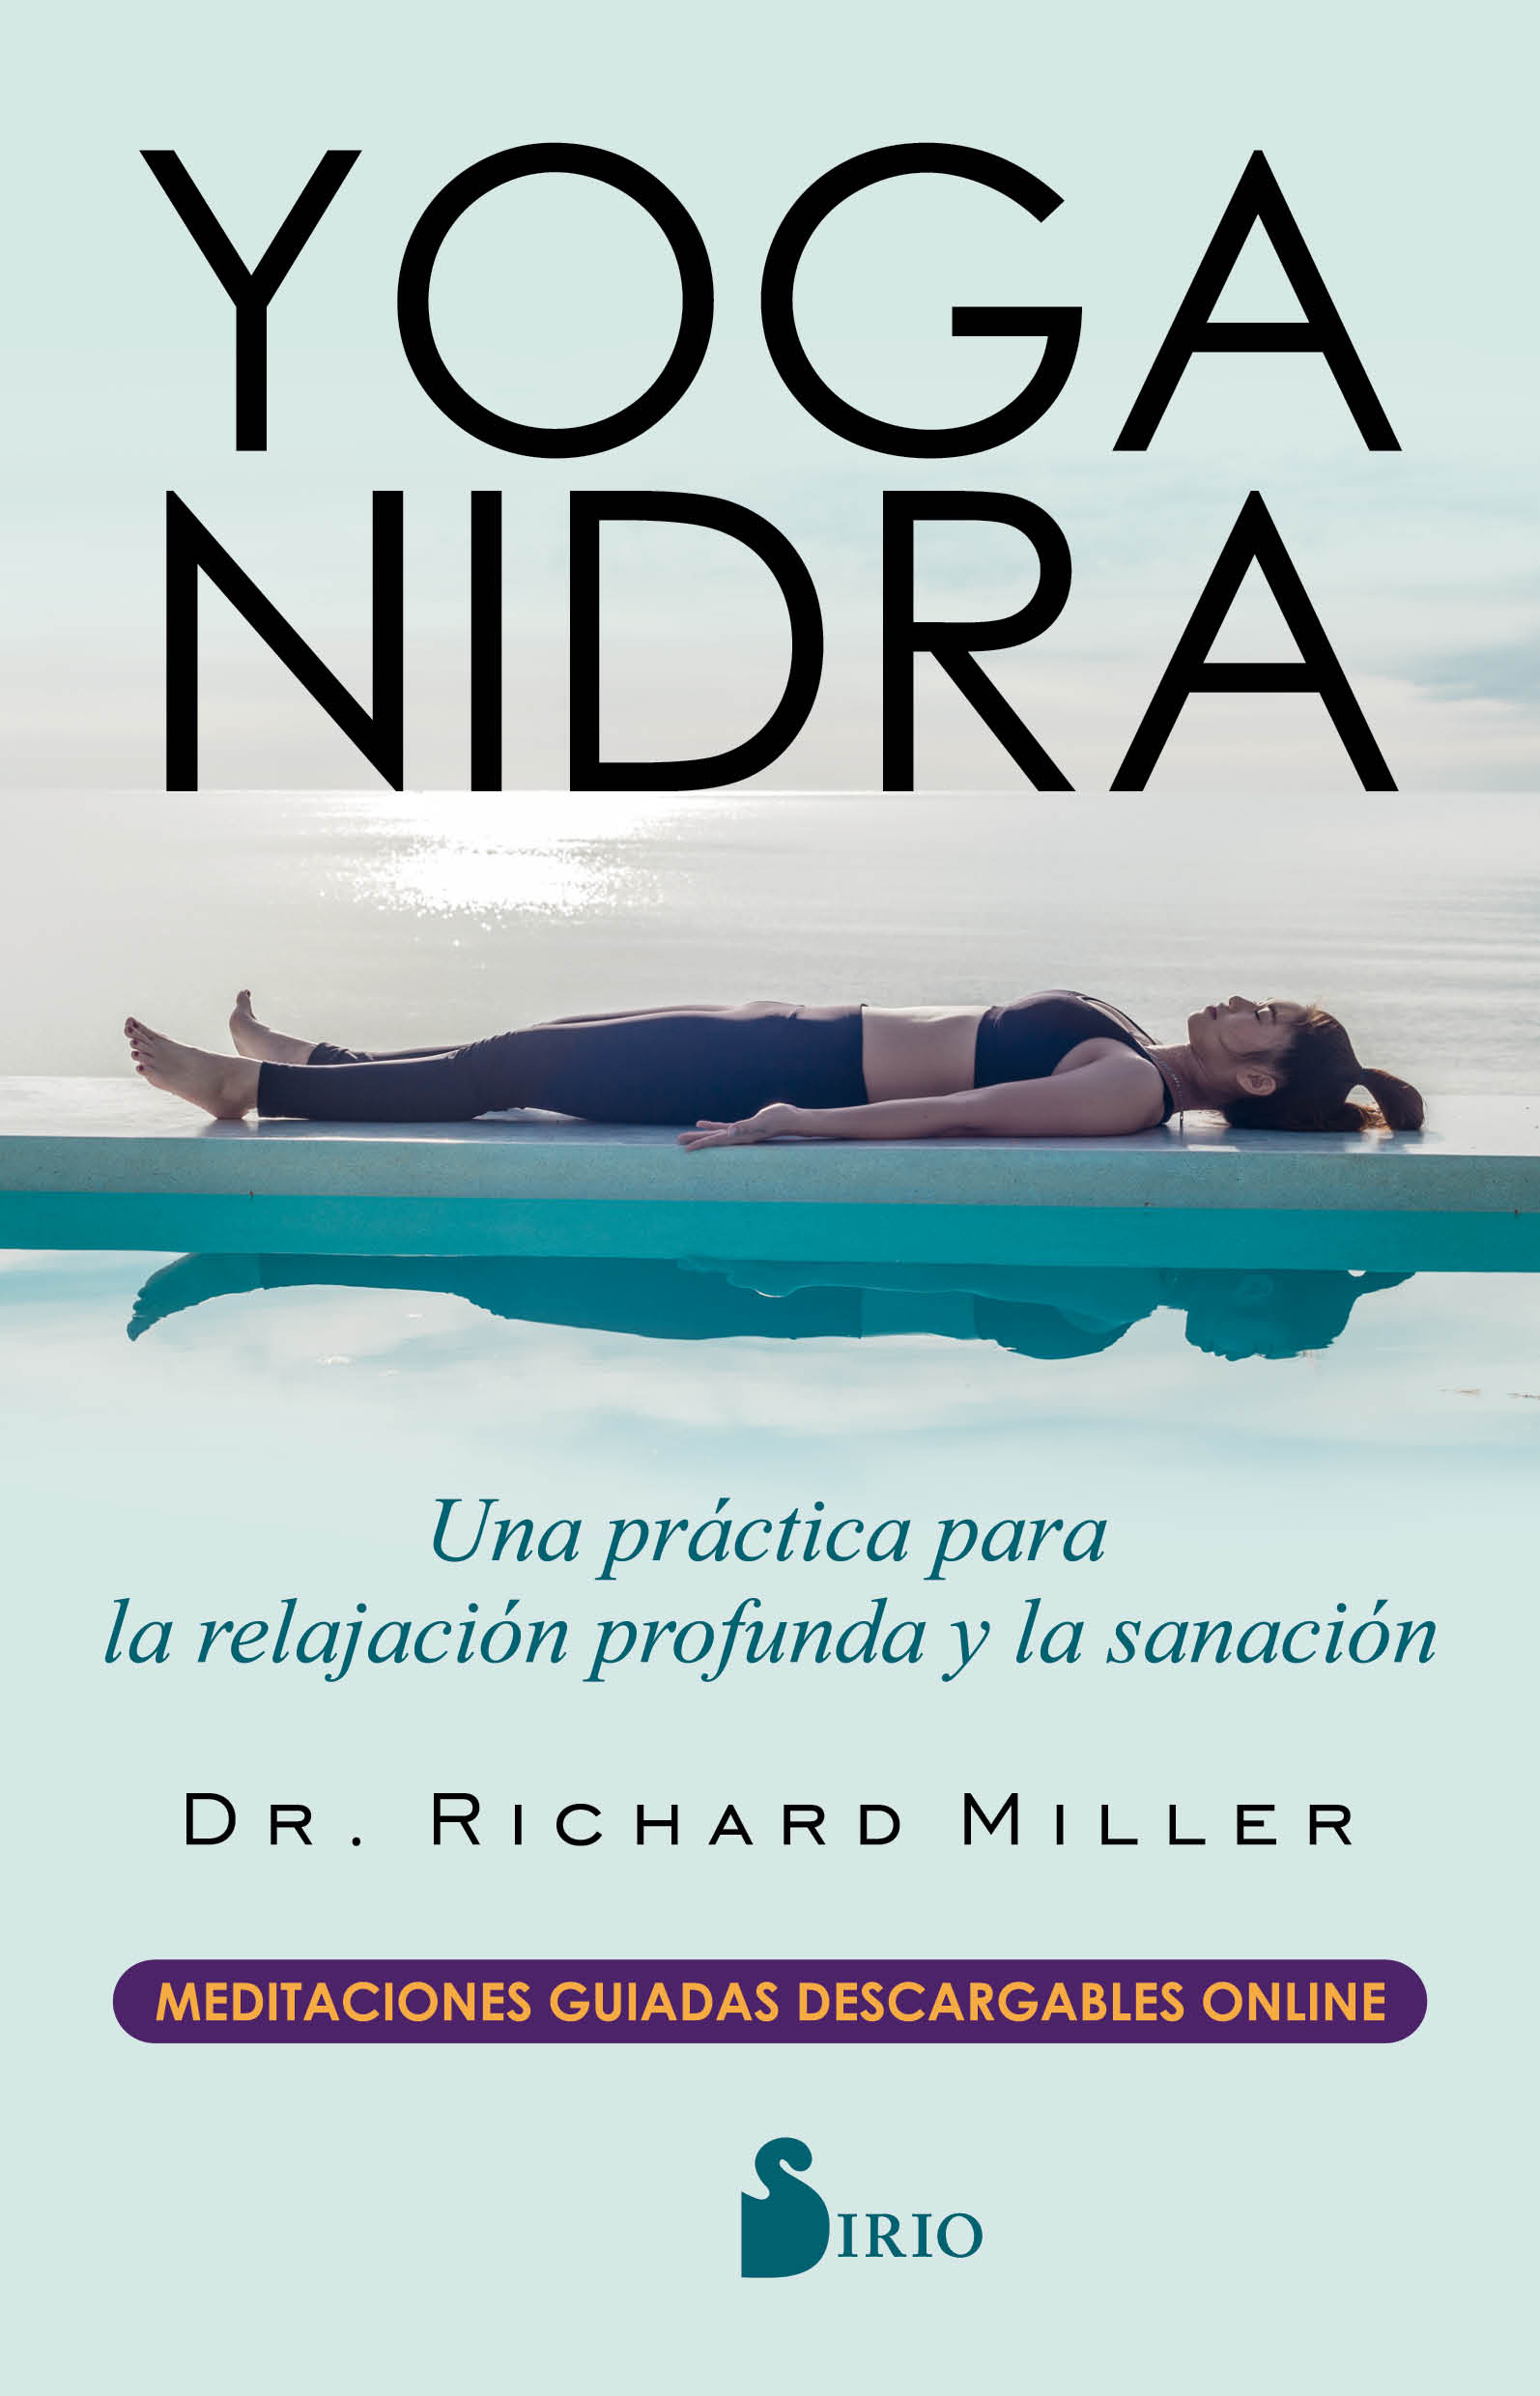 YOGA NIDRA «Una práctica para la relajación profunda y la sanación»